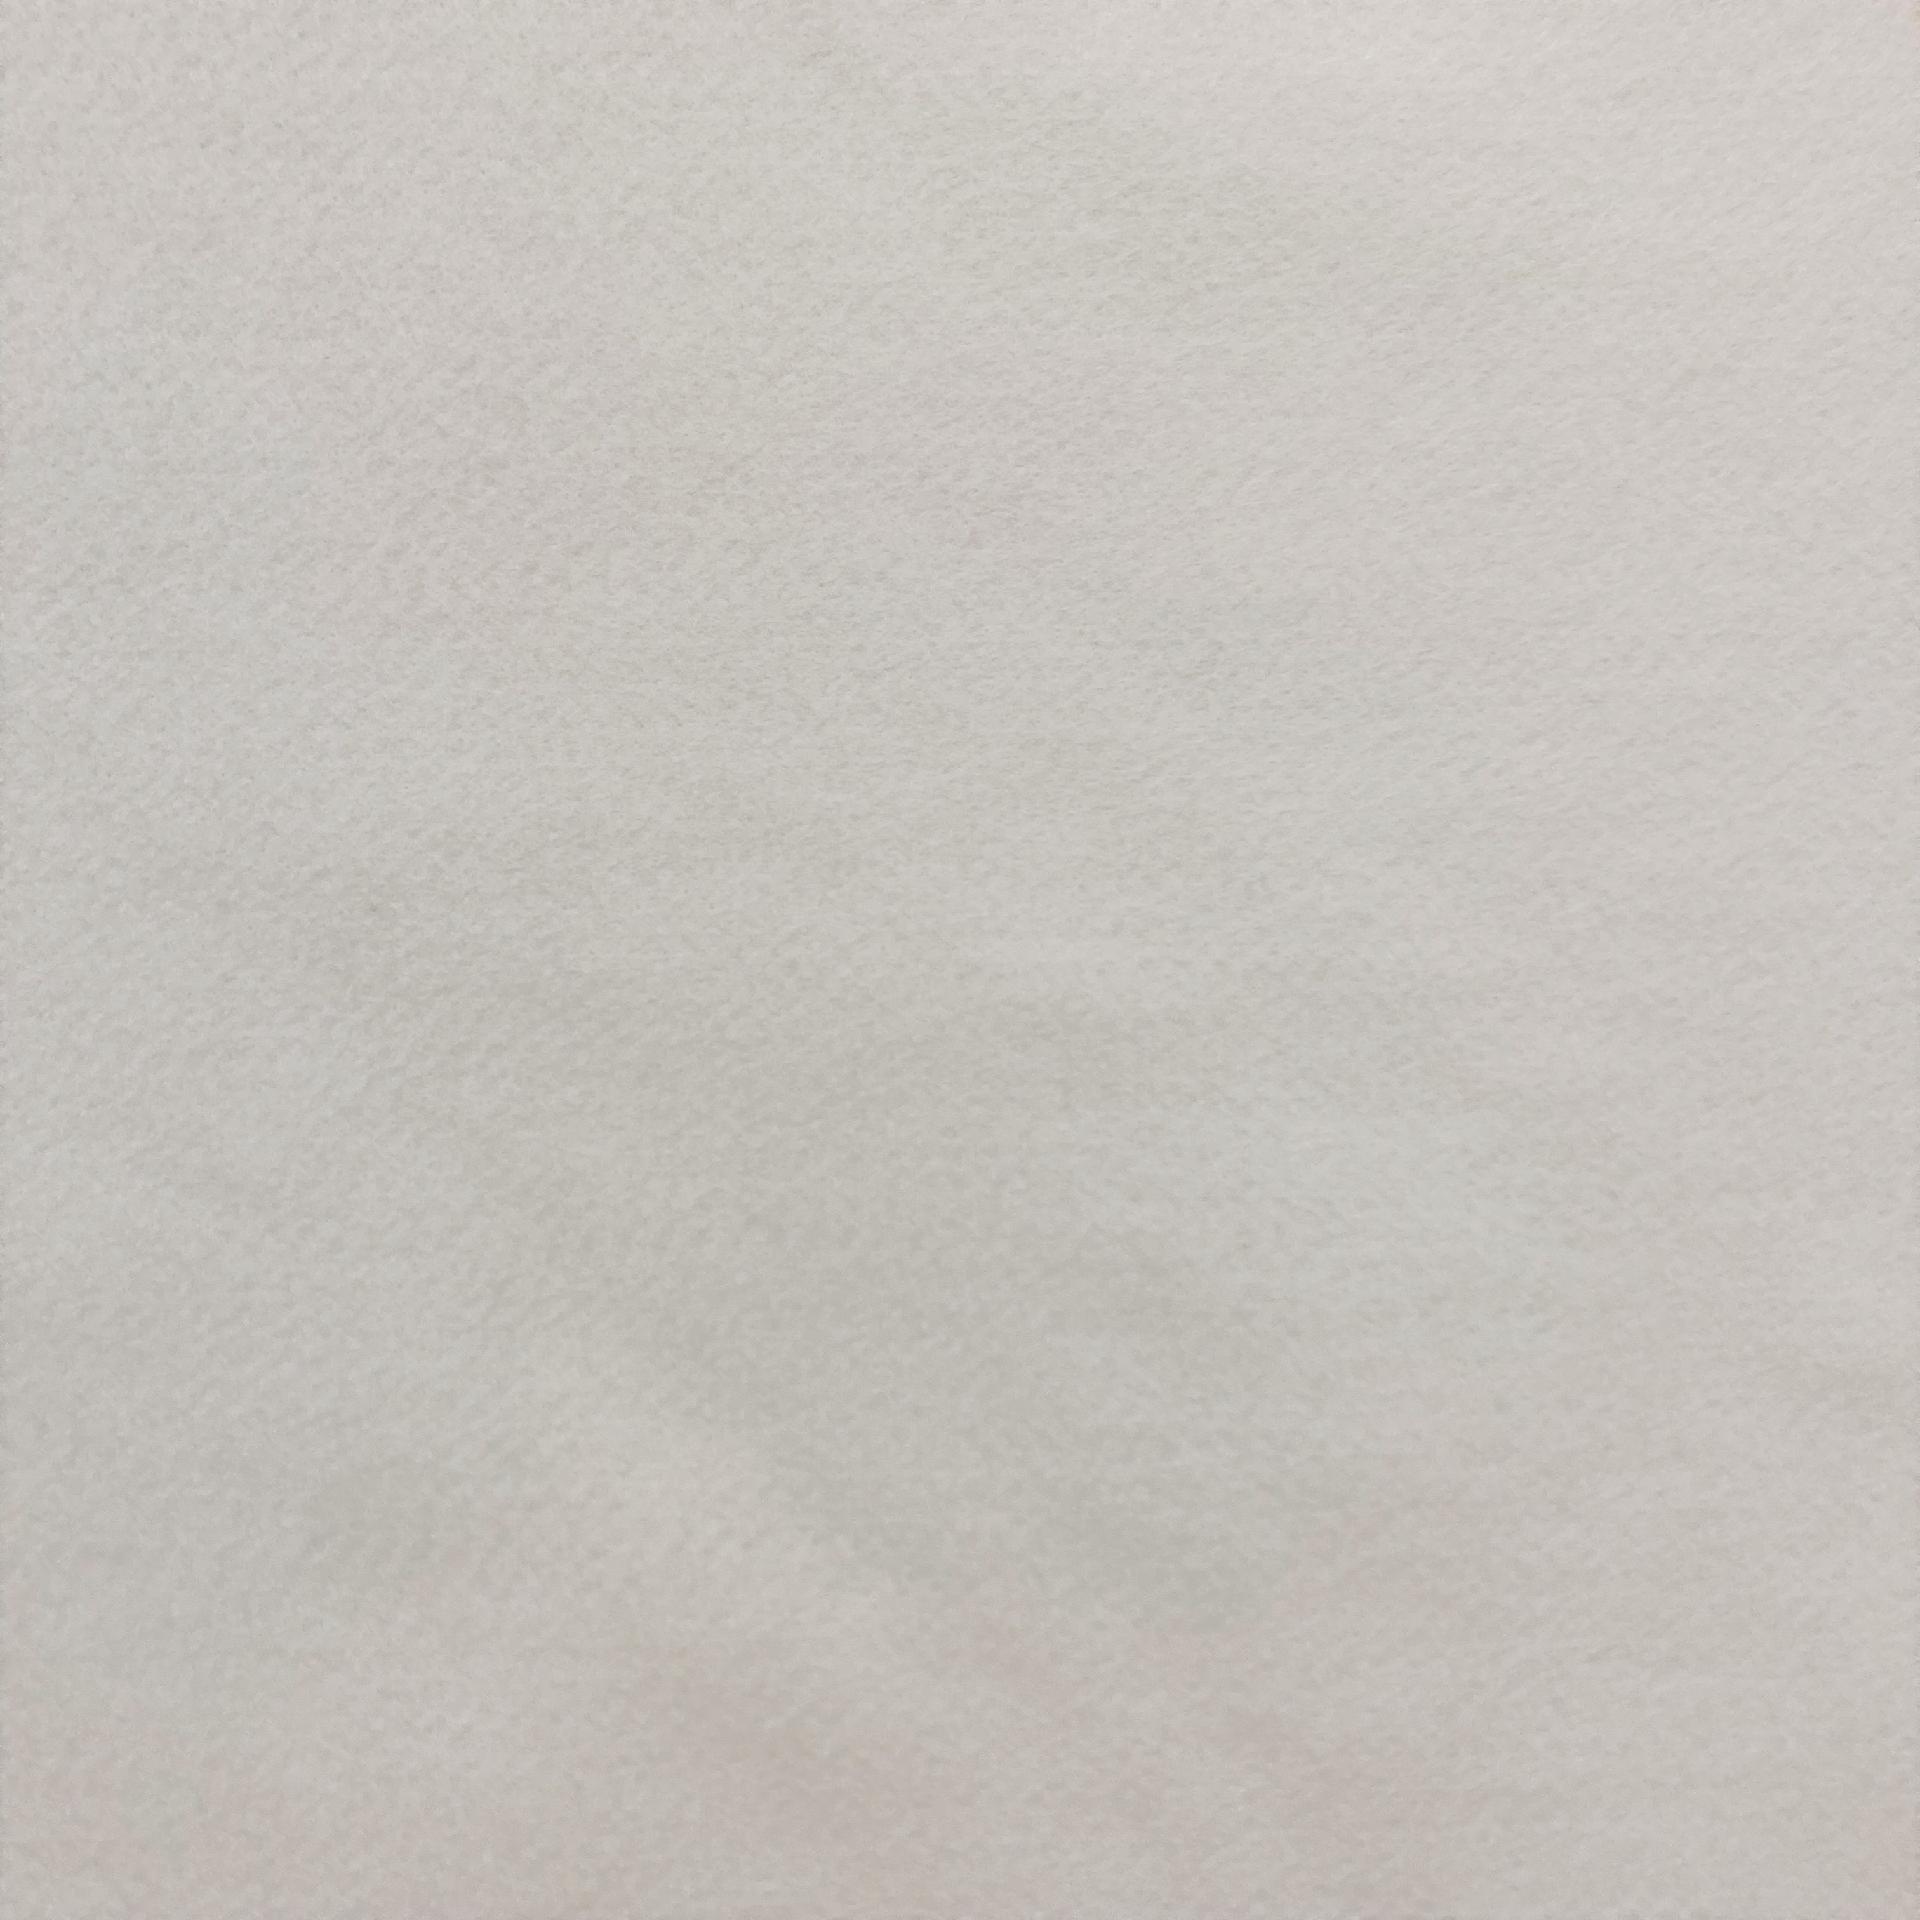 Pannolenci Bianco 1mm Arti e Grafica h 180 x 50 cm - Bagheria (Palermo)